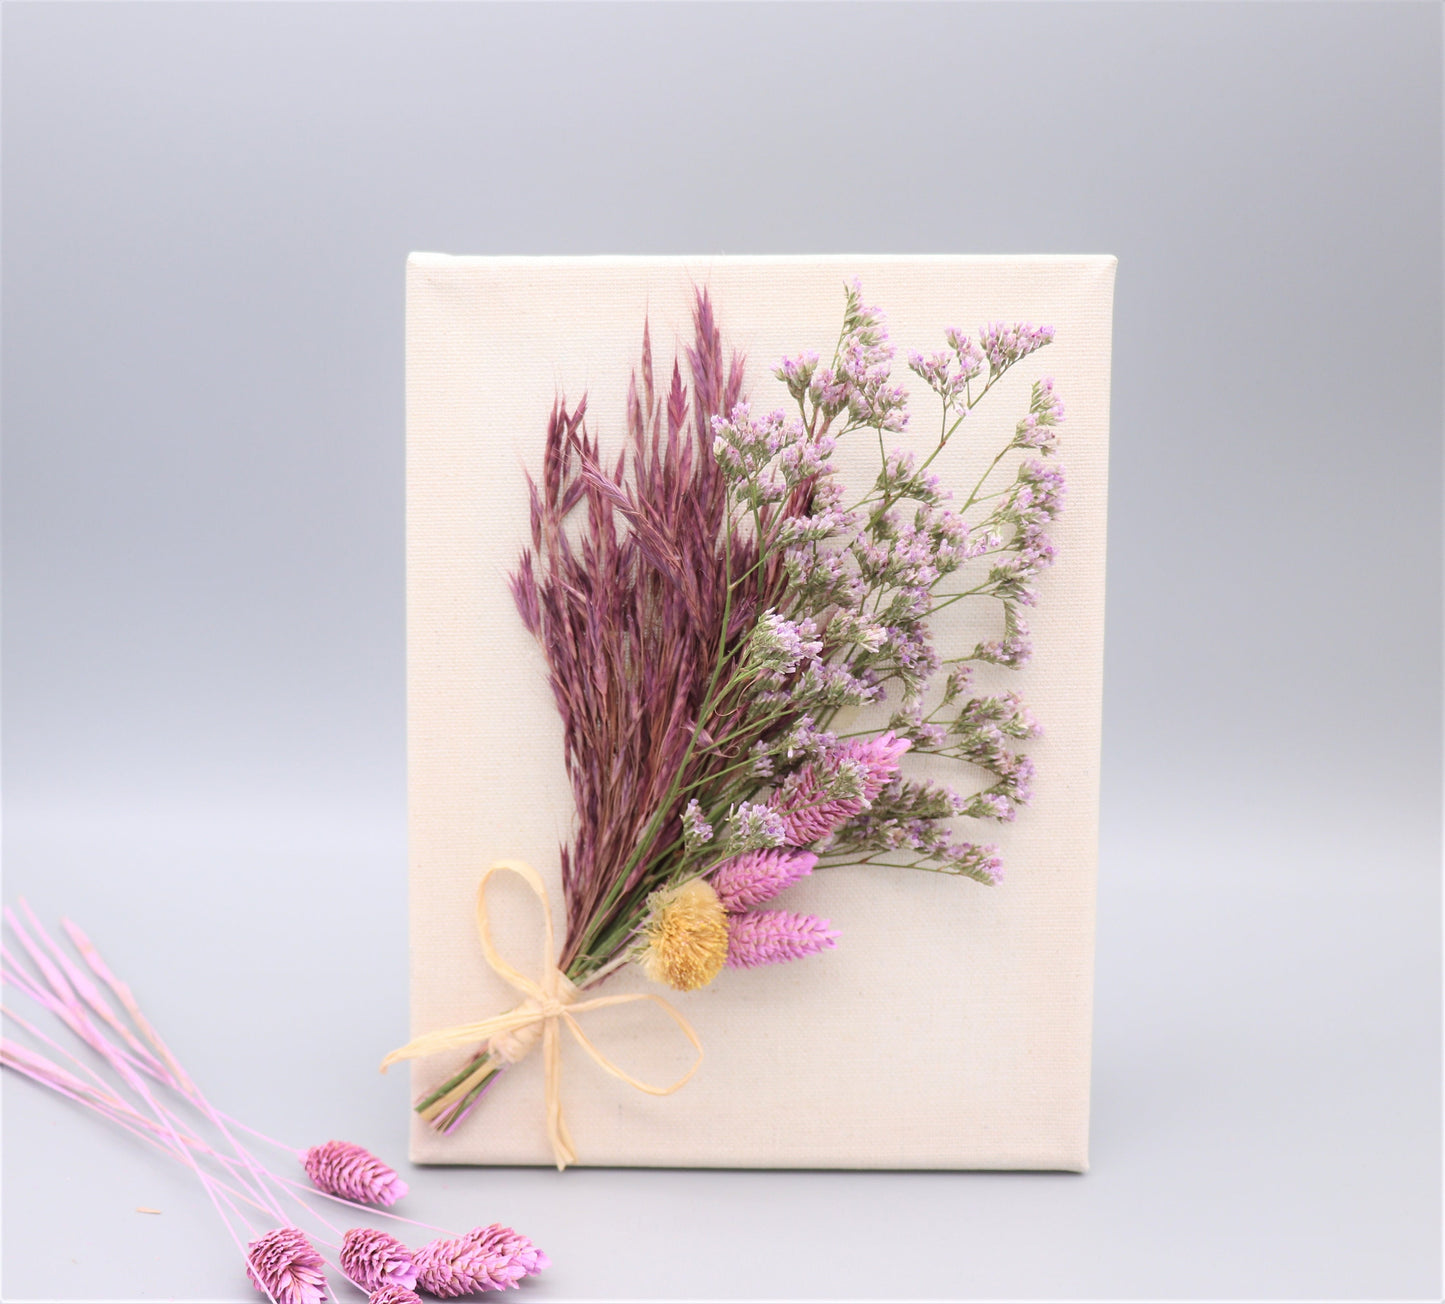 Trockenblumenstrauß mit Keilrahmen Rahmen Bilderrahmen Flower Bouquet Leinwand